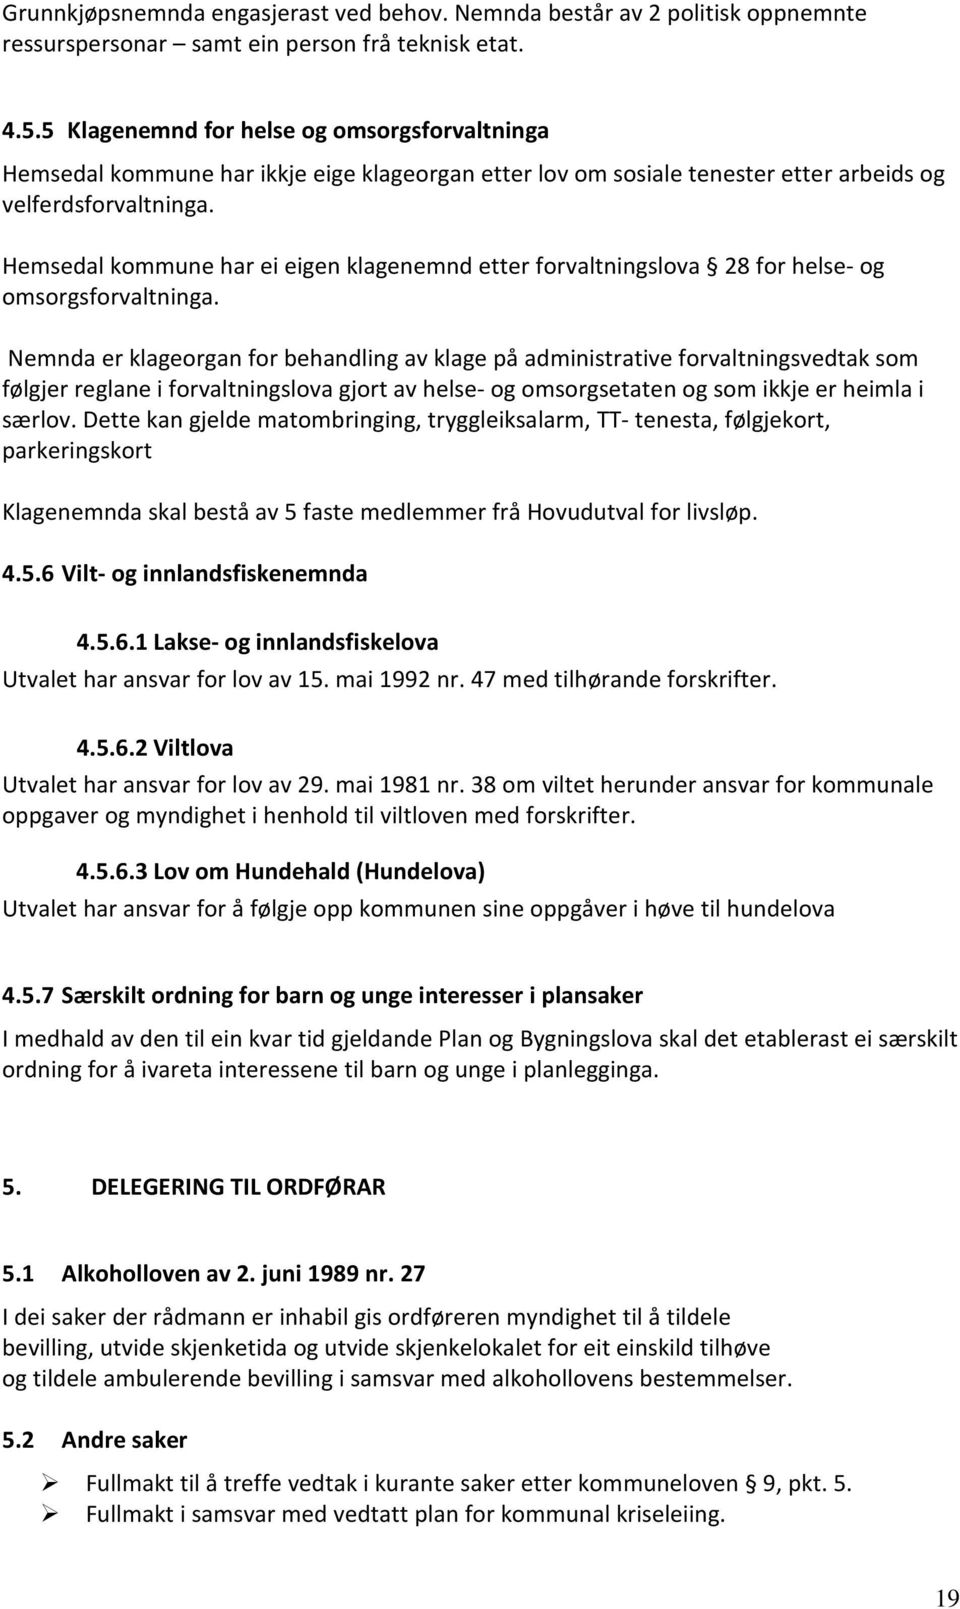 Hemsedal kommune har ei eigen klagenemnd etter forvaltningslova 28 for helse- og omsorgsforvaltninga.